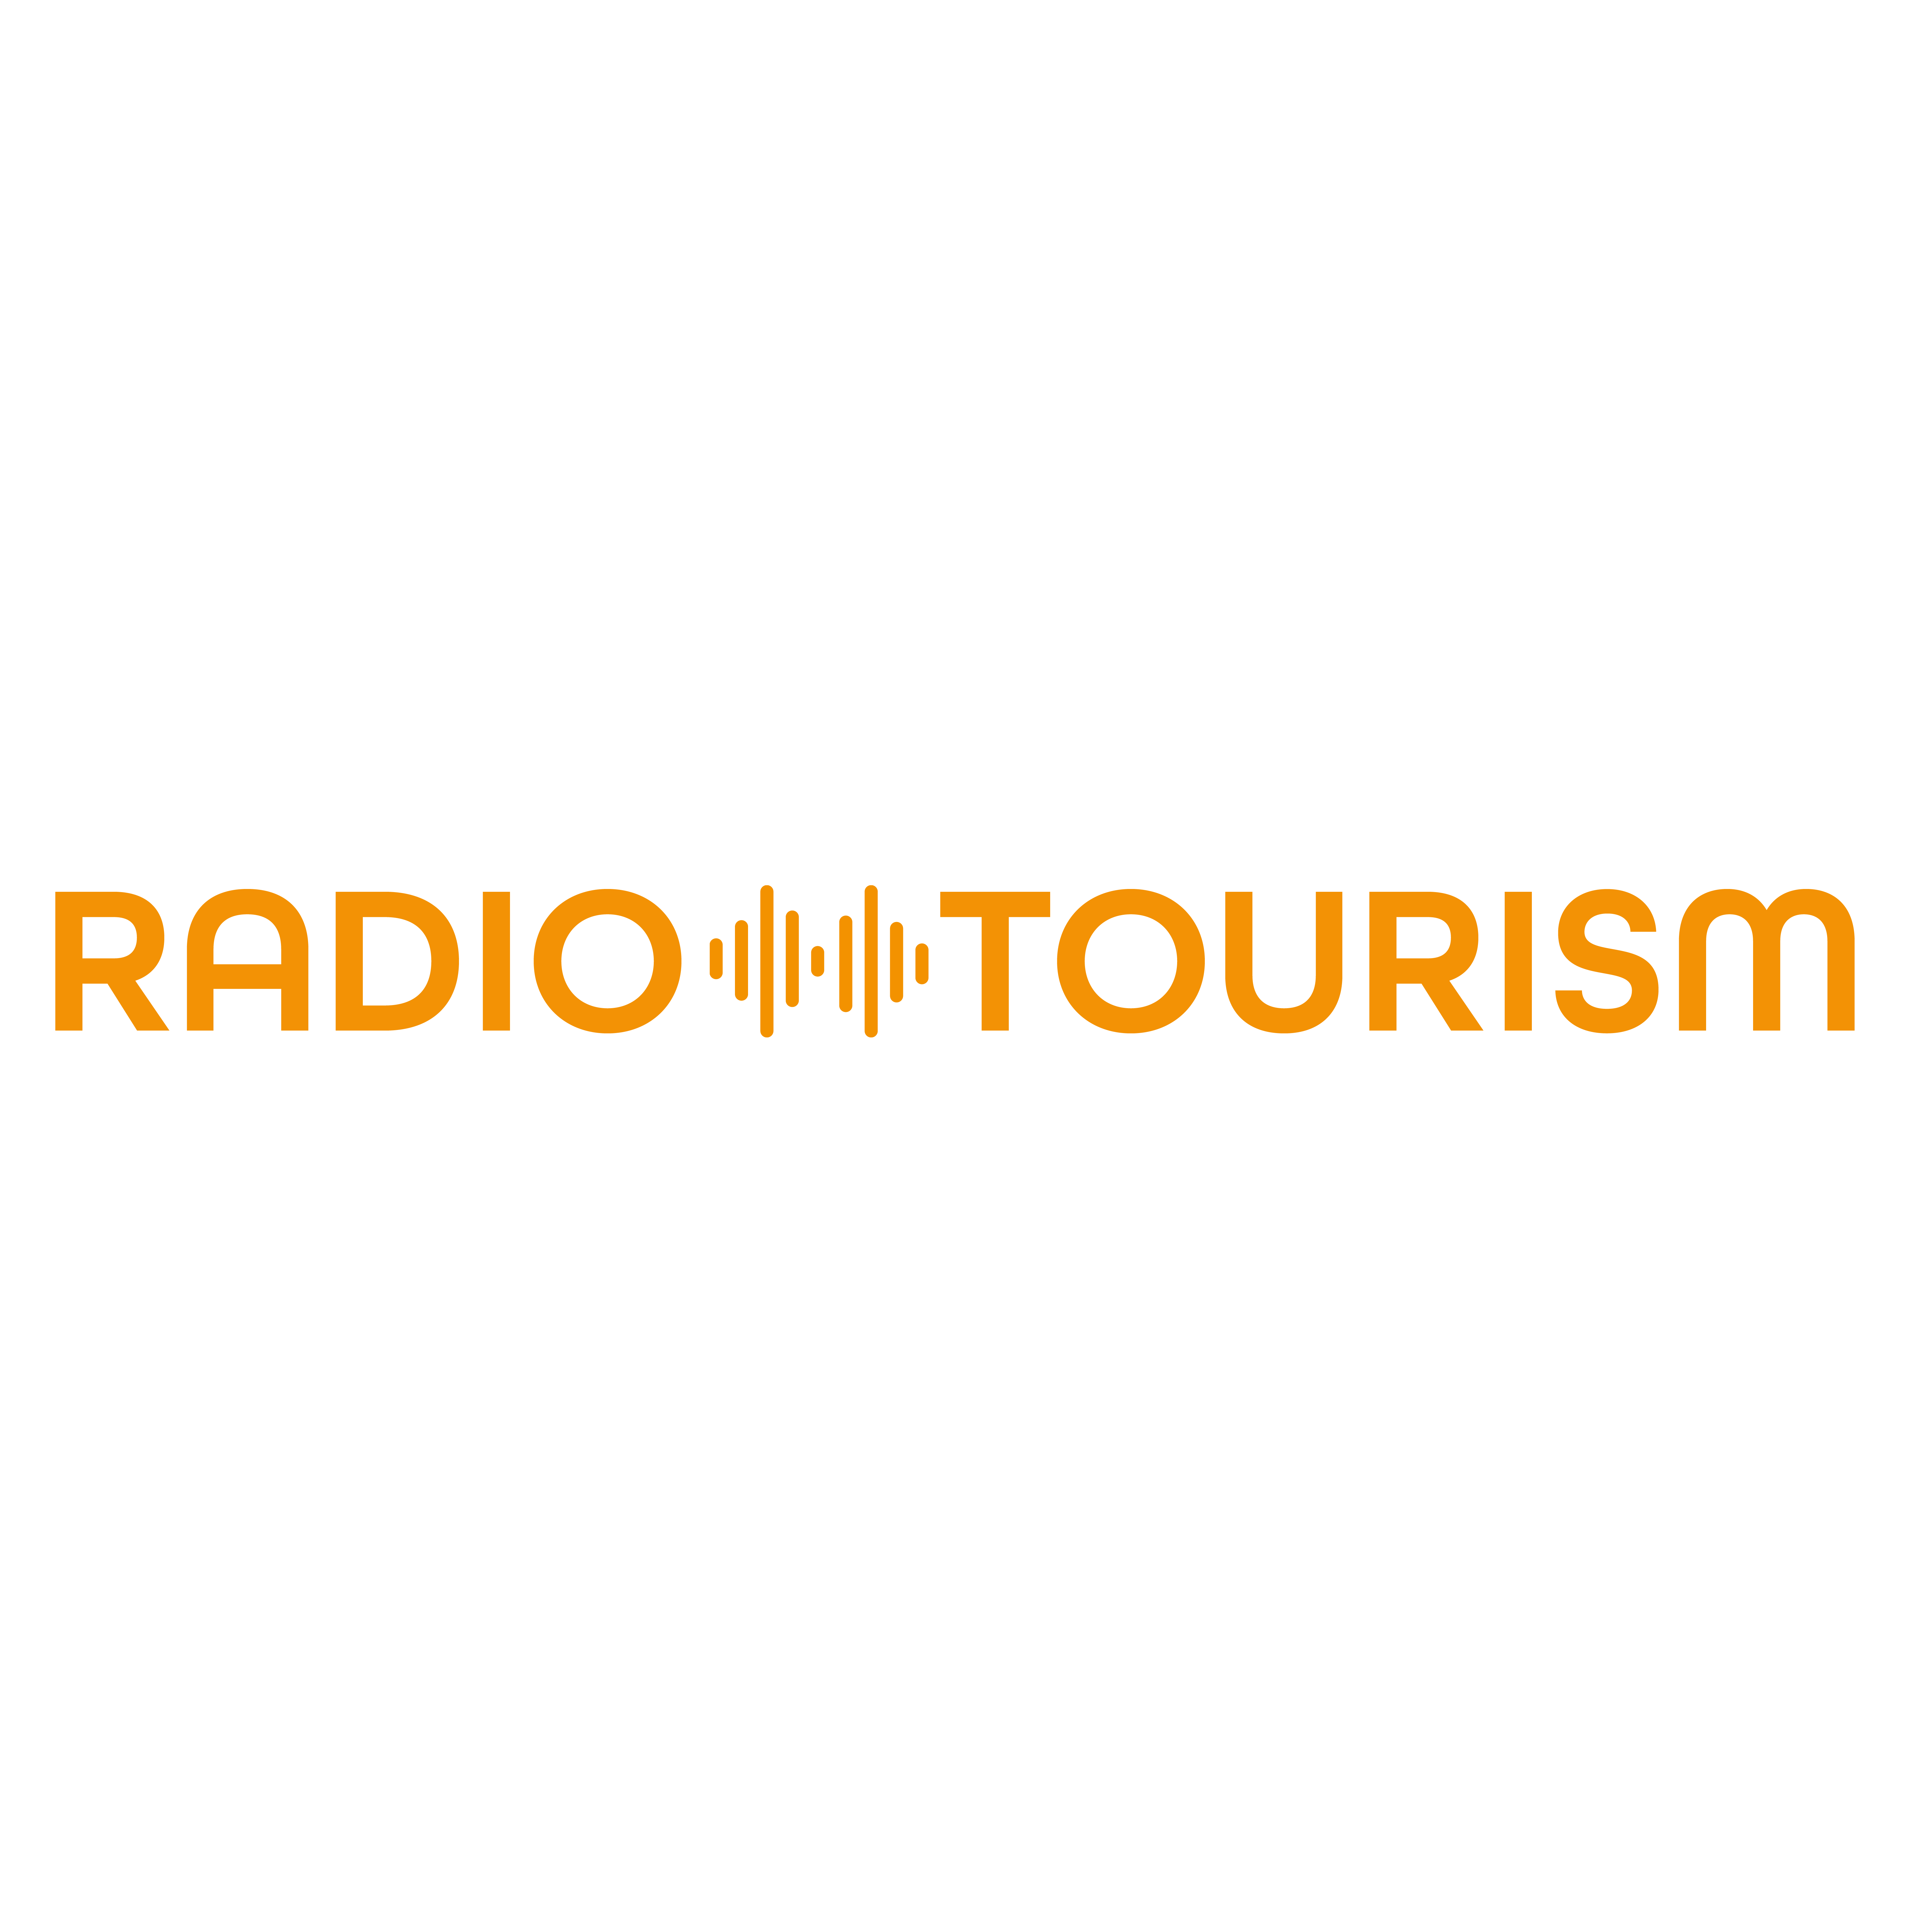 Logo RADIO TOURISM fokussiert voll und ganz auf audiovisuelle Inhalte und Hörfunkaktivitäten aller Art für touristische Marken und Unternehmen. Das Kundenspektrum reicht dabei von Destinationen und deren Managementgesellschaften oder Repräsentanzen über Reiseveranstalter, Reisemittler und Verkehrsträger bis hin zu oder Entertainmentveranstaltern, Parks oder auch Hotels.

Auf Medienseite arbeitet RADIO TOURISM primär – aber nicht ausschließlich – mit allen privaten deutschen Hörfunksendern (200 plus) zusammen und gewährleistet so jederzeit die Möglichkeit flächendeckender Verbreitung.